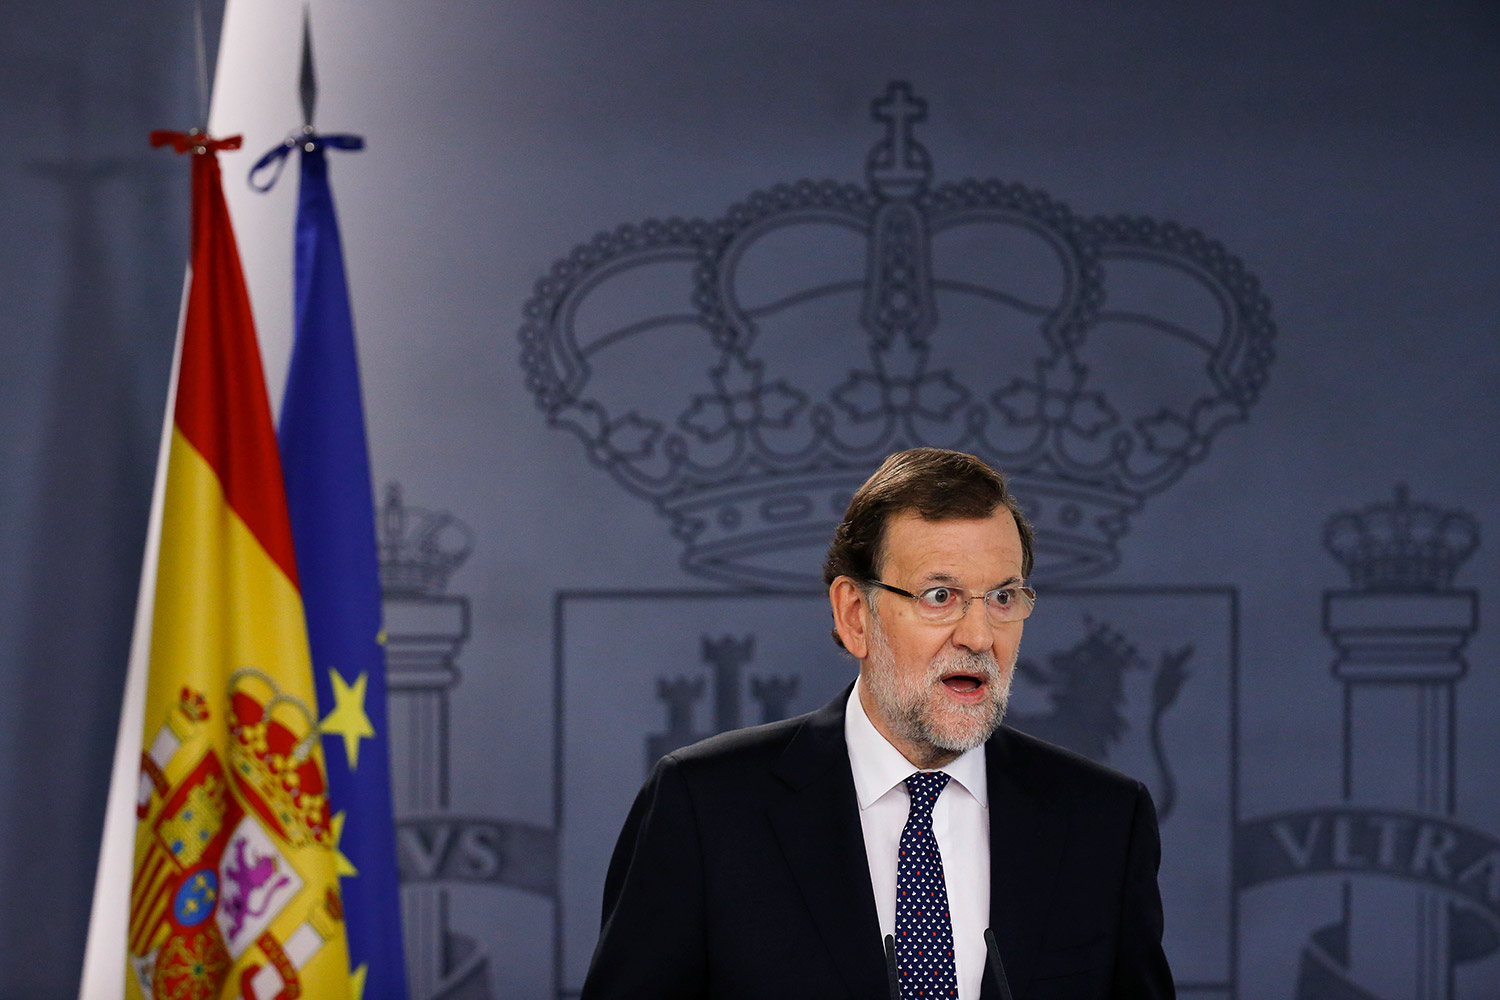 La explicación científica de los numerosos ‘lapsus linguae’ de Rajoy